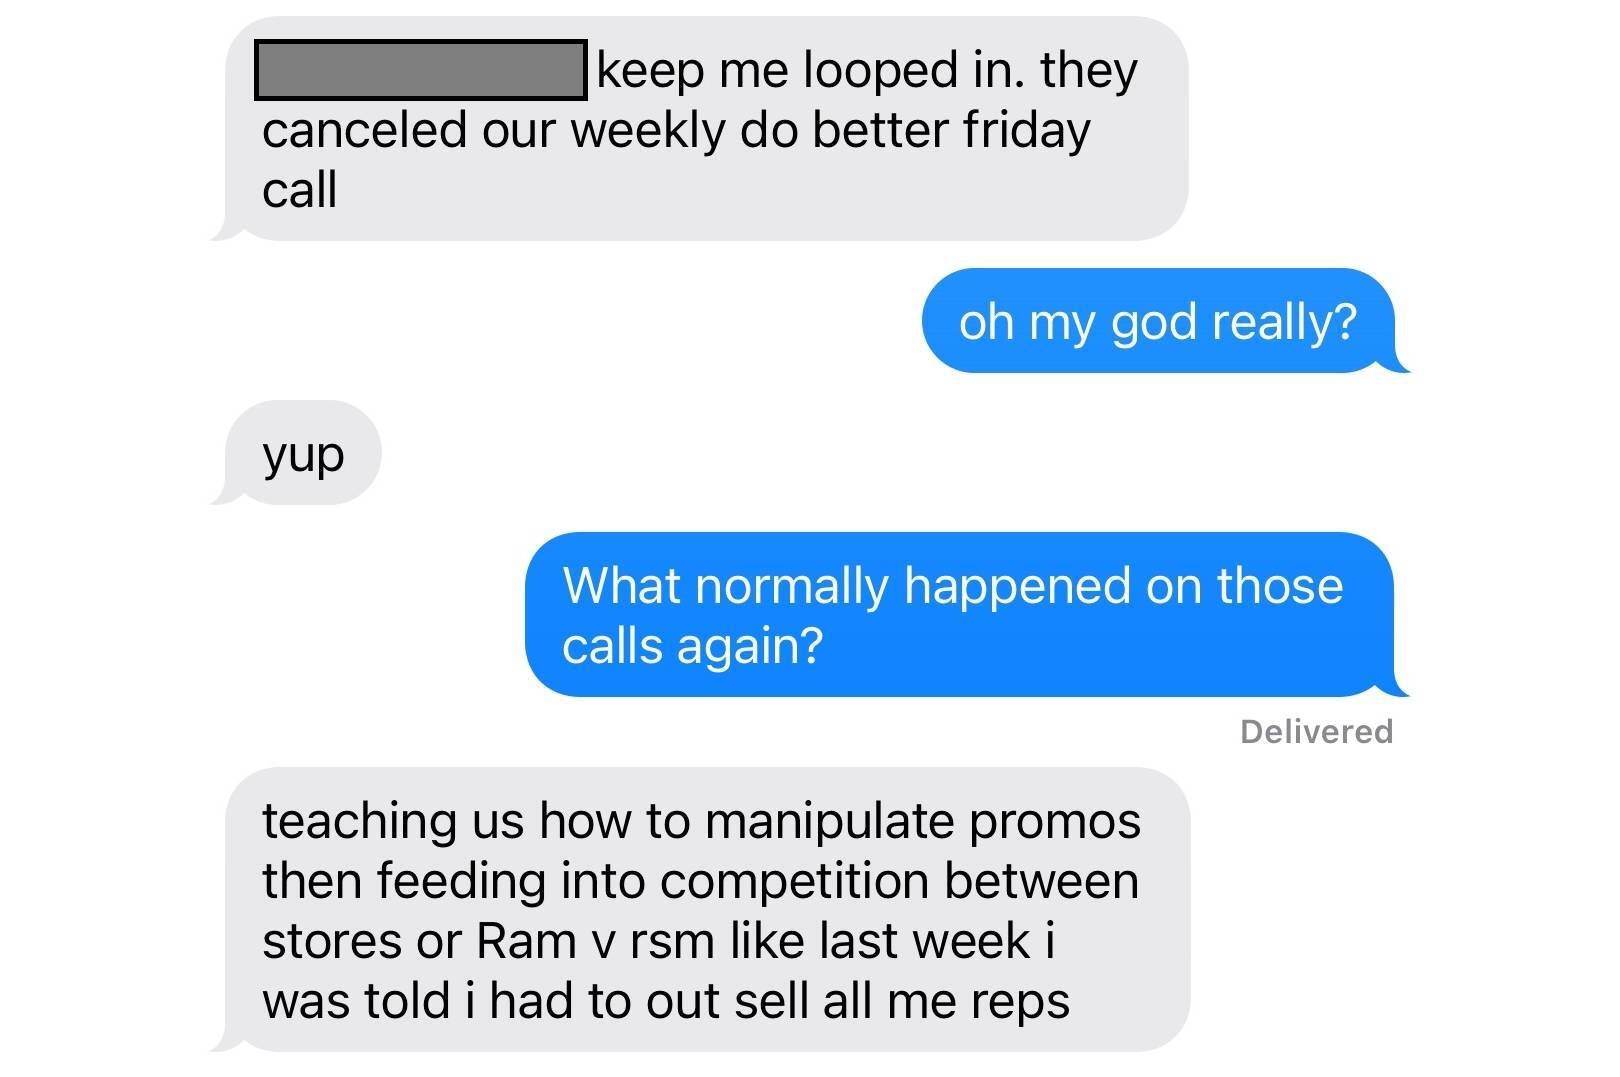 Üçüncü taraf perakendeciler çalışanlarına karanlık satış taktikleri öğretiyor. - Bazı T-Mobile mağazaları iade edilen telefonları yeniden paketleyip yeniymiş gibi sattı